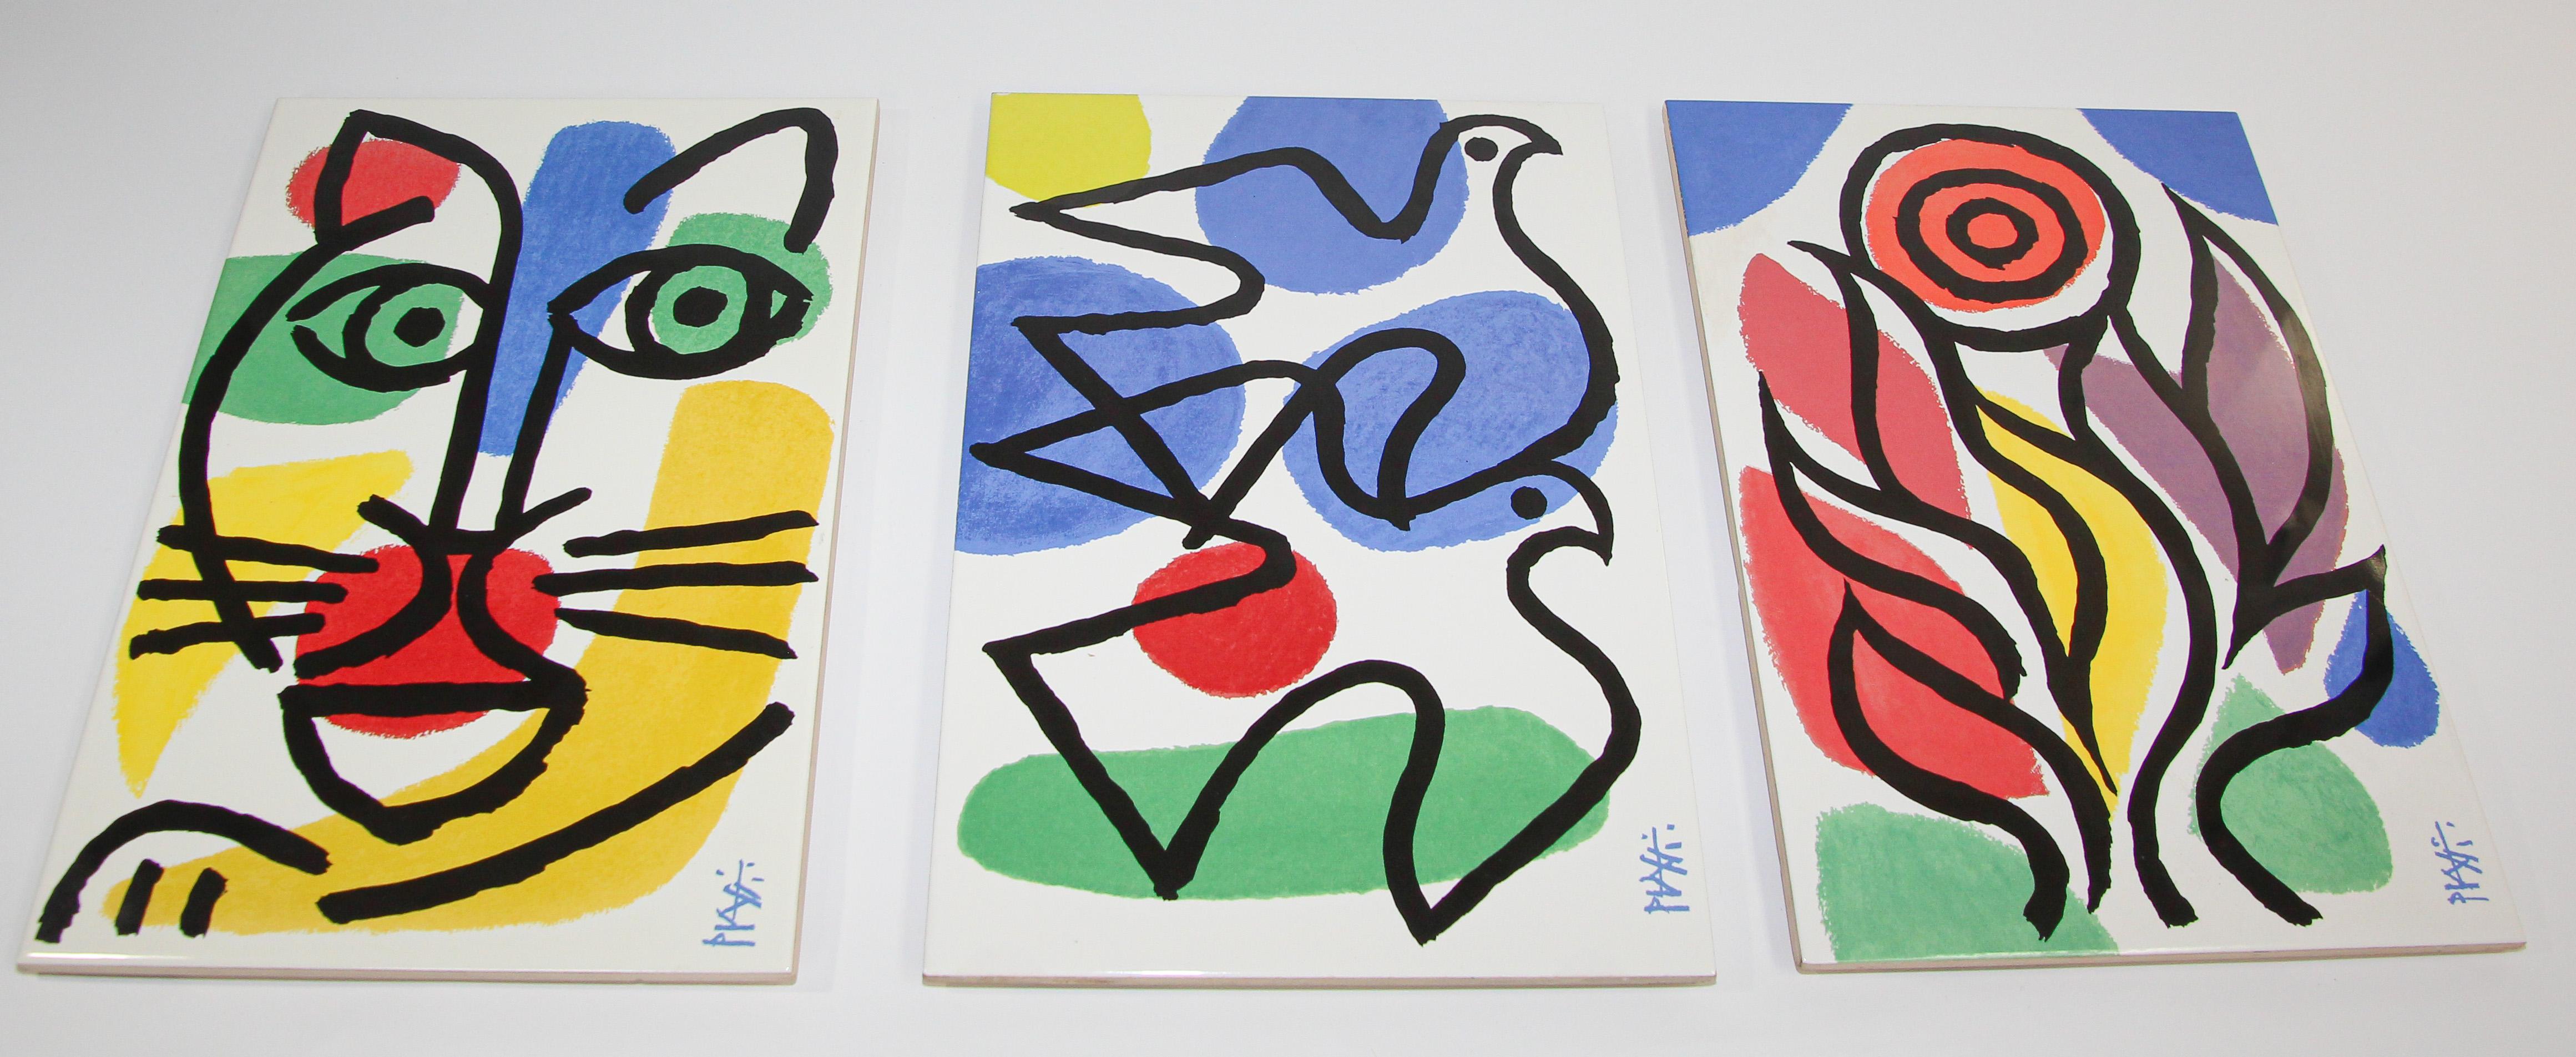 Celestino Piatti Ceramic Art Tiles in Picasso Style Post Modern For Sale 3